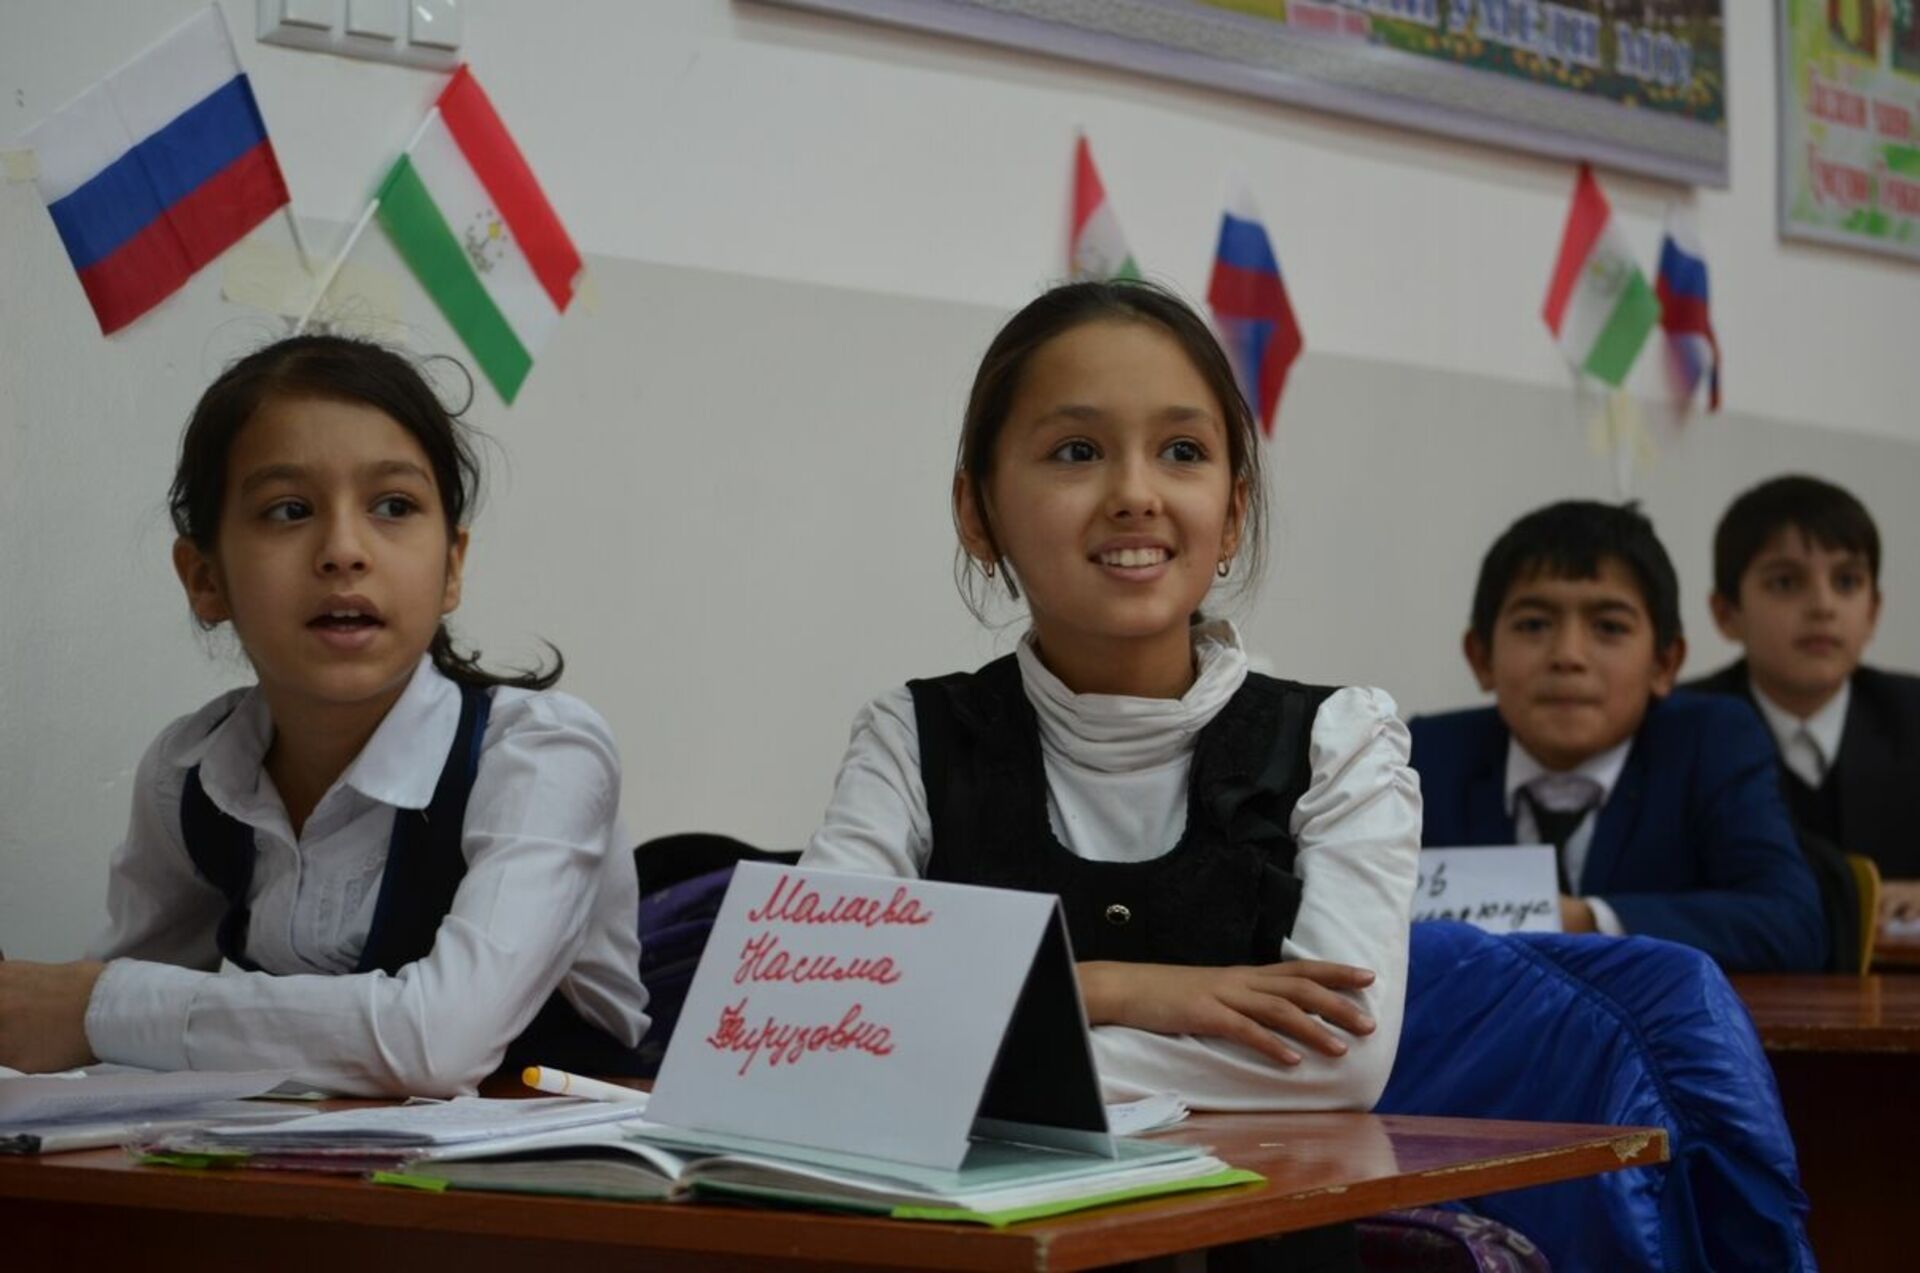 Русский язык в ташкенте. Такжикская школа в Таджикистане. Русскоязычные школы в Таджикистане. Русско таджикские школы в Таджикистане. Русский язык в Таджикистане в школах.